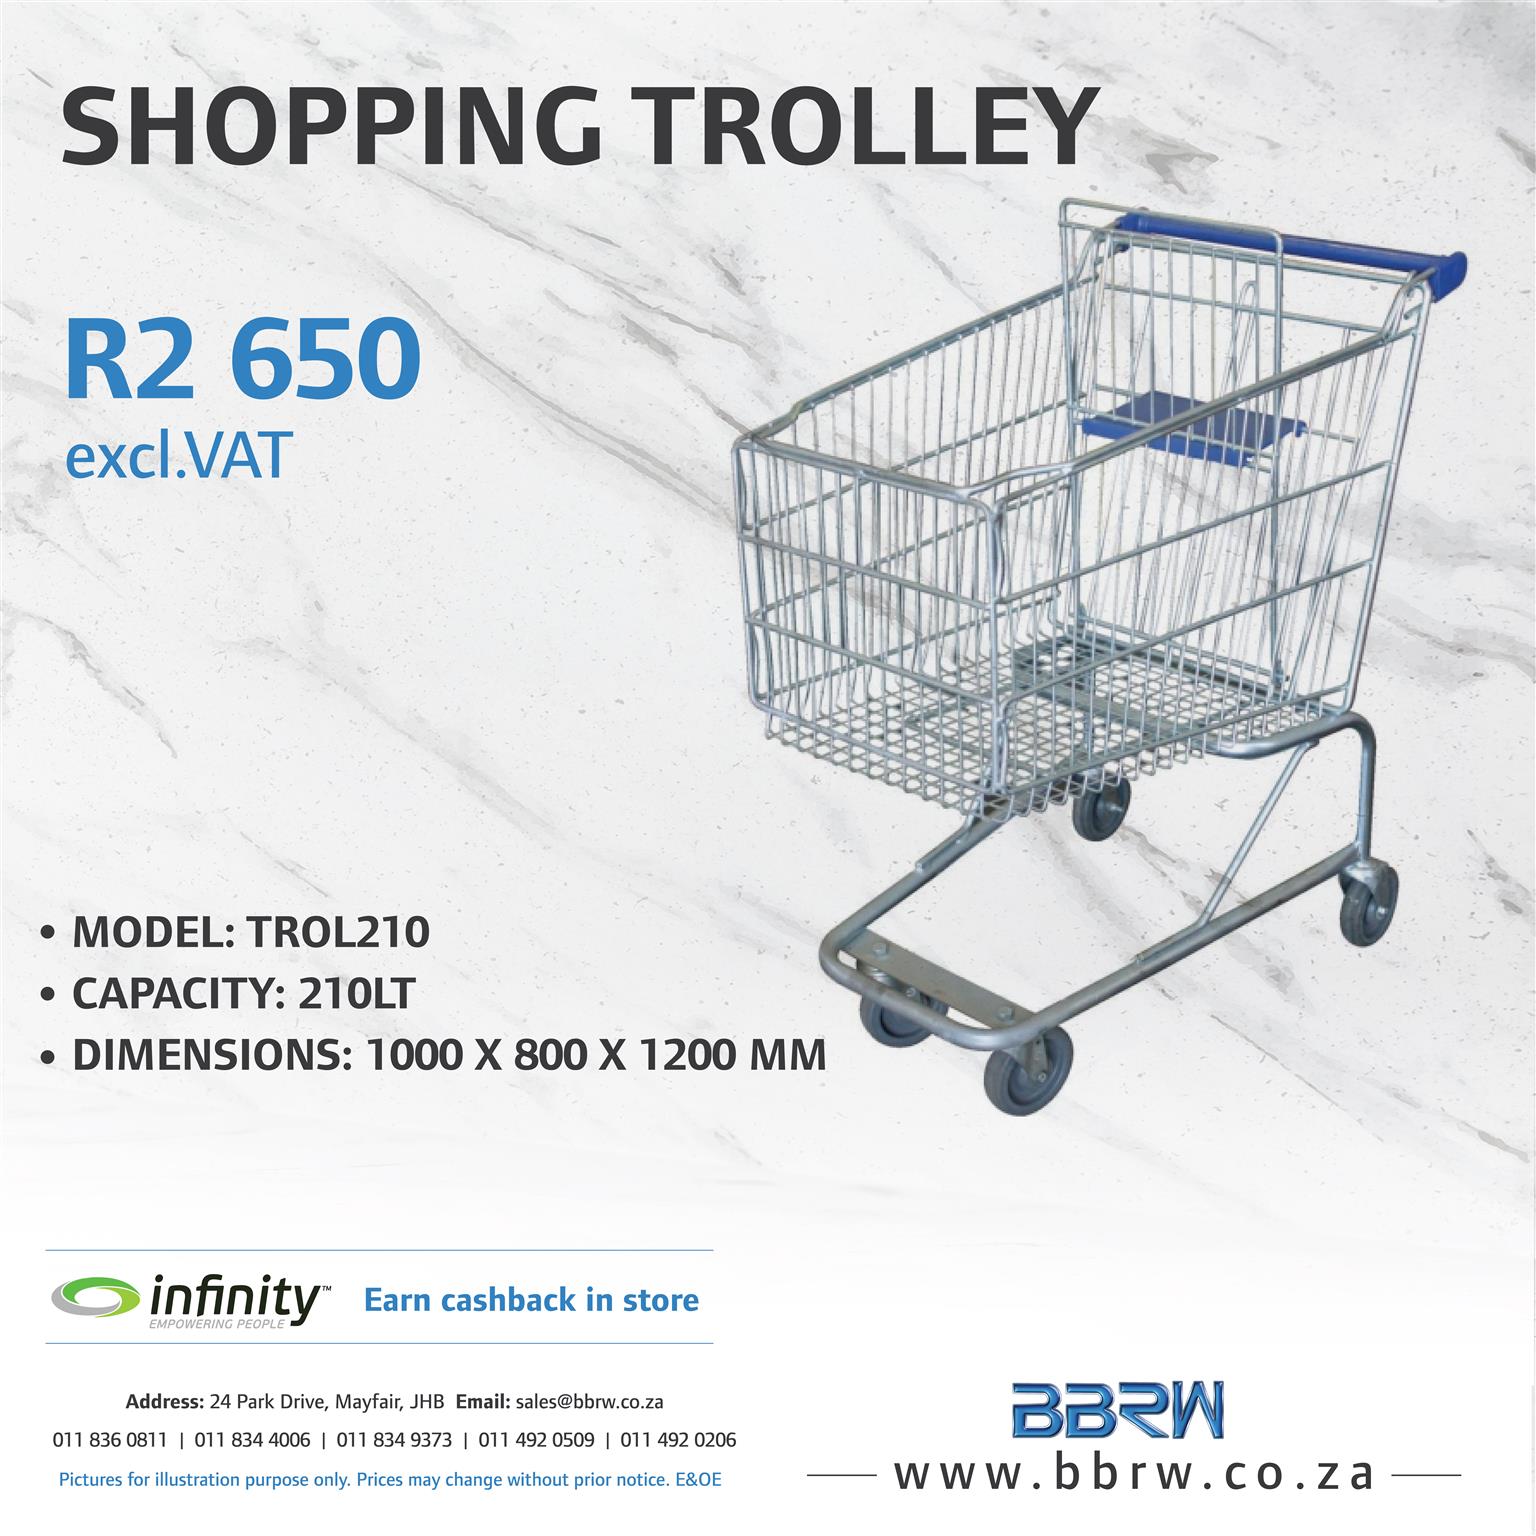 BBRW SPECIAL - Shopping Trolleys